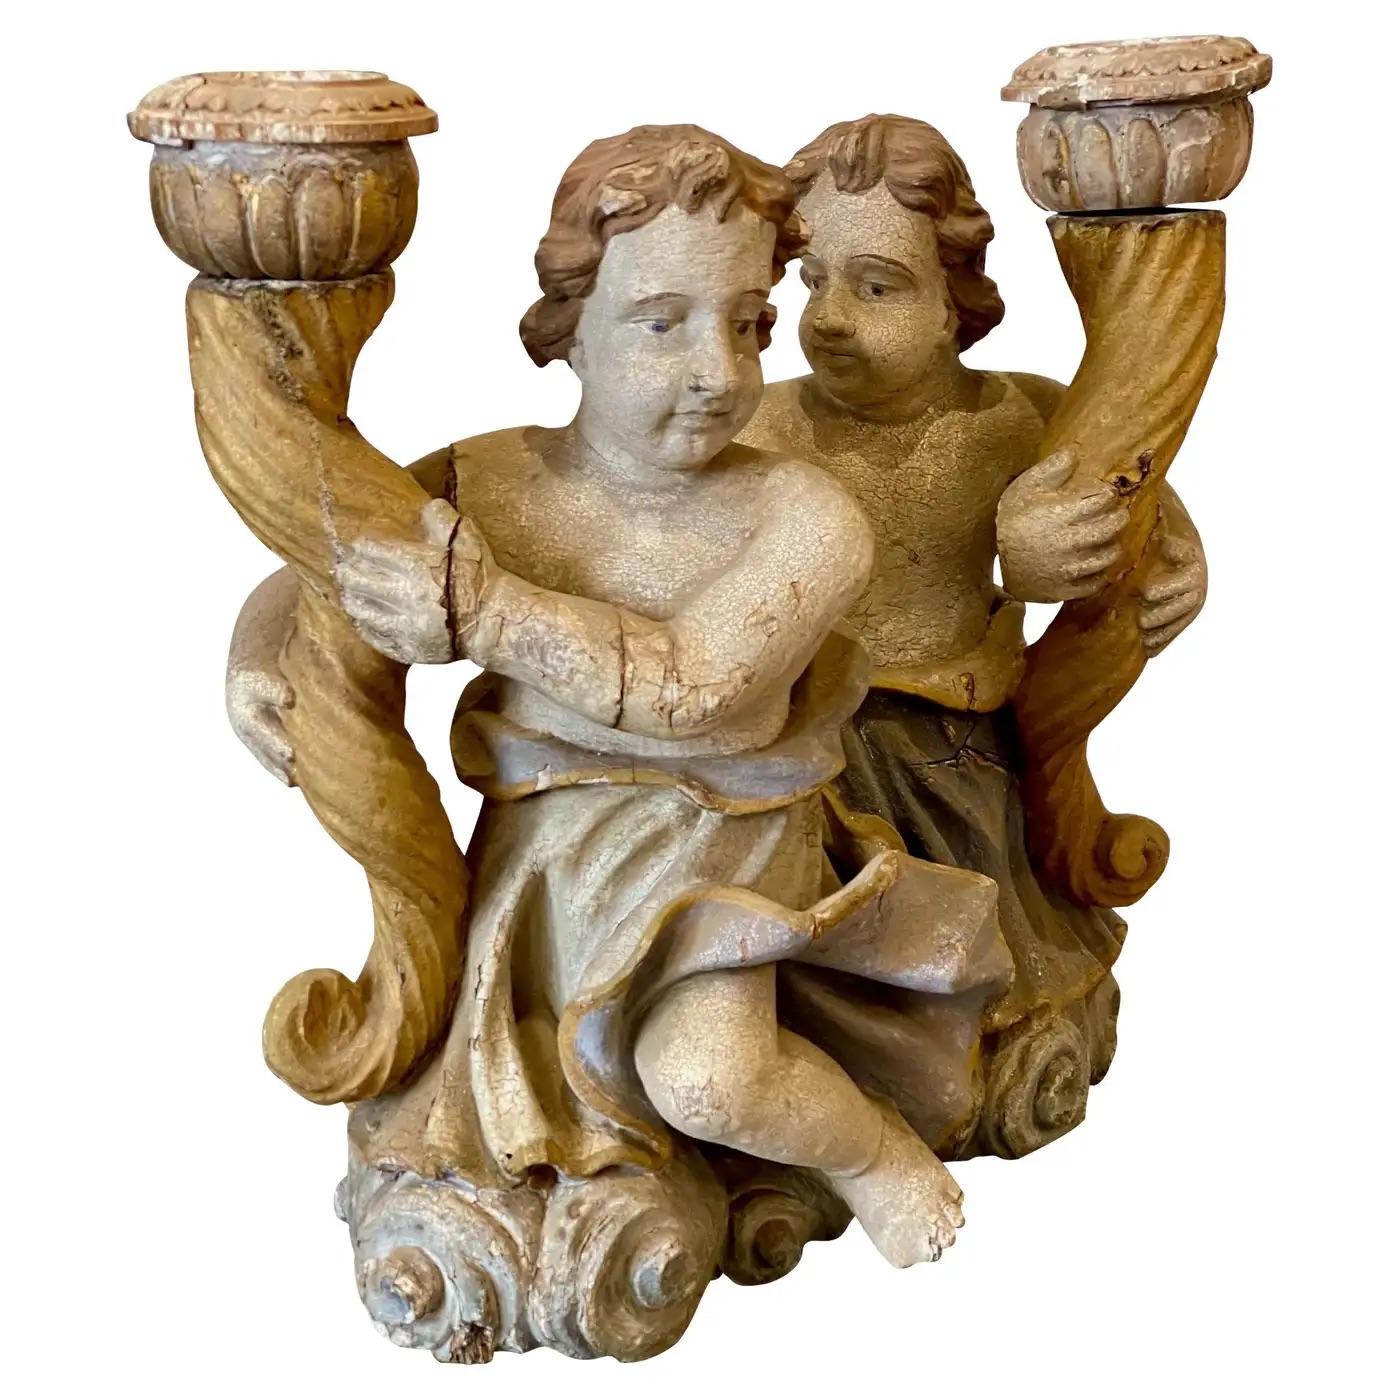 Bougeoirs à chérubin continentaux sculptés et décorés en polychromie, deuxième quart du XVIIIe siècle, chacun ayant conservé sa peinture d'origine, et représentant deux putti soutenant un étendard sculpté en corne d'abondance stylisée, et s'élevant